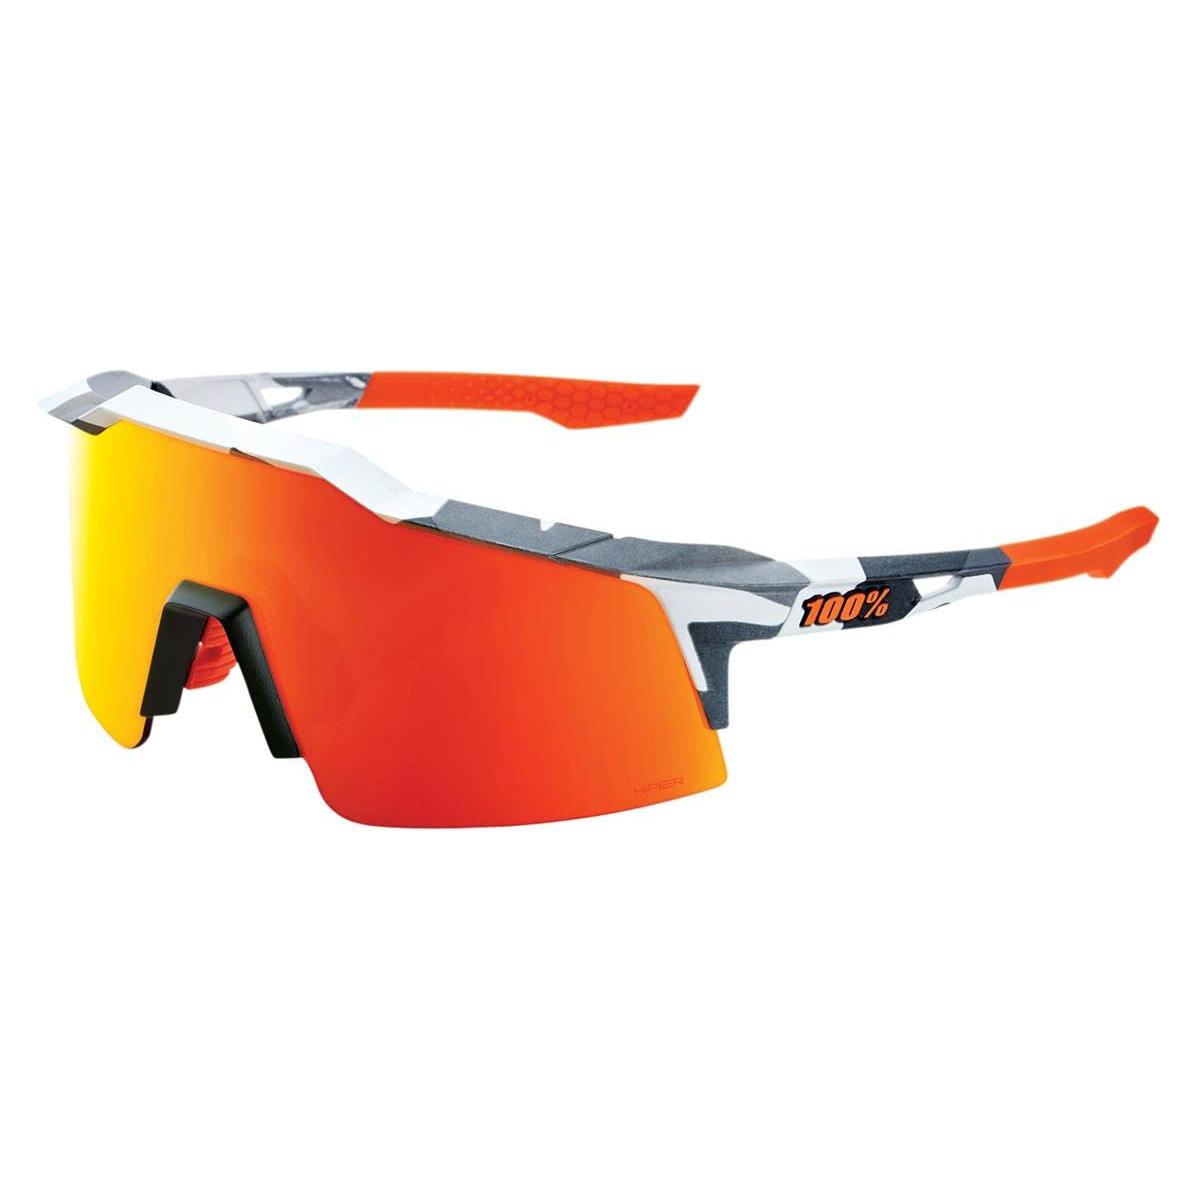 100 Percent Racetrap 3.0 Cycling Sunglasses